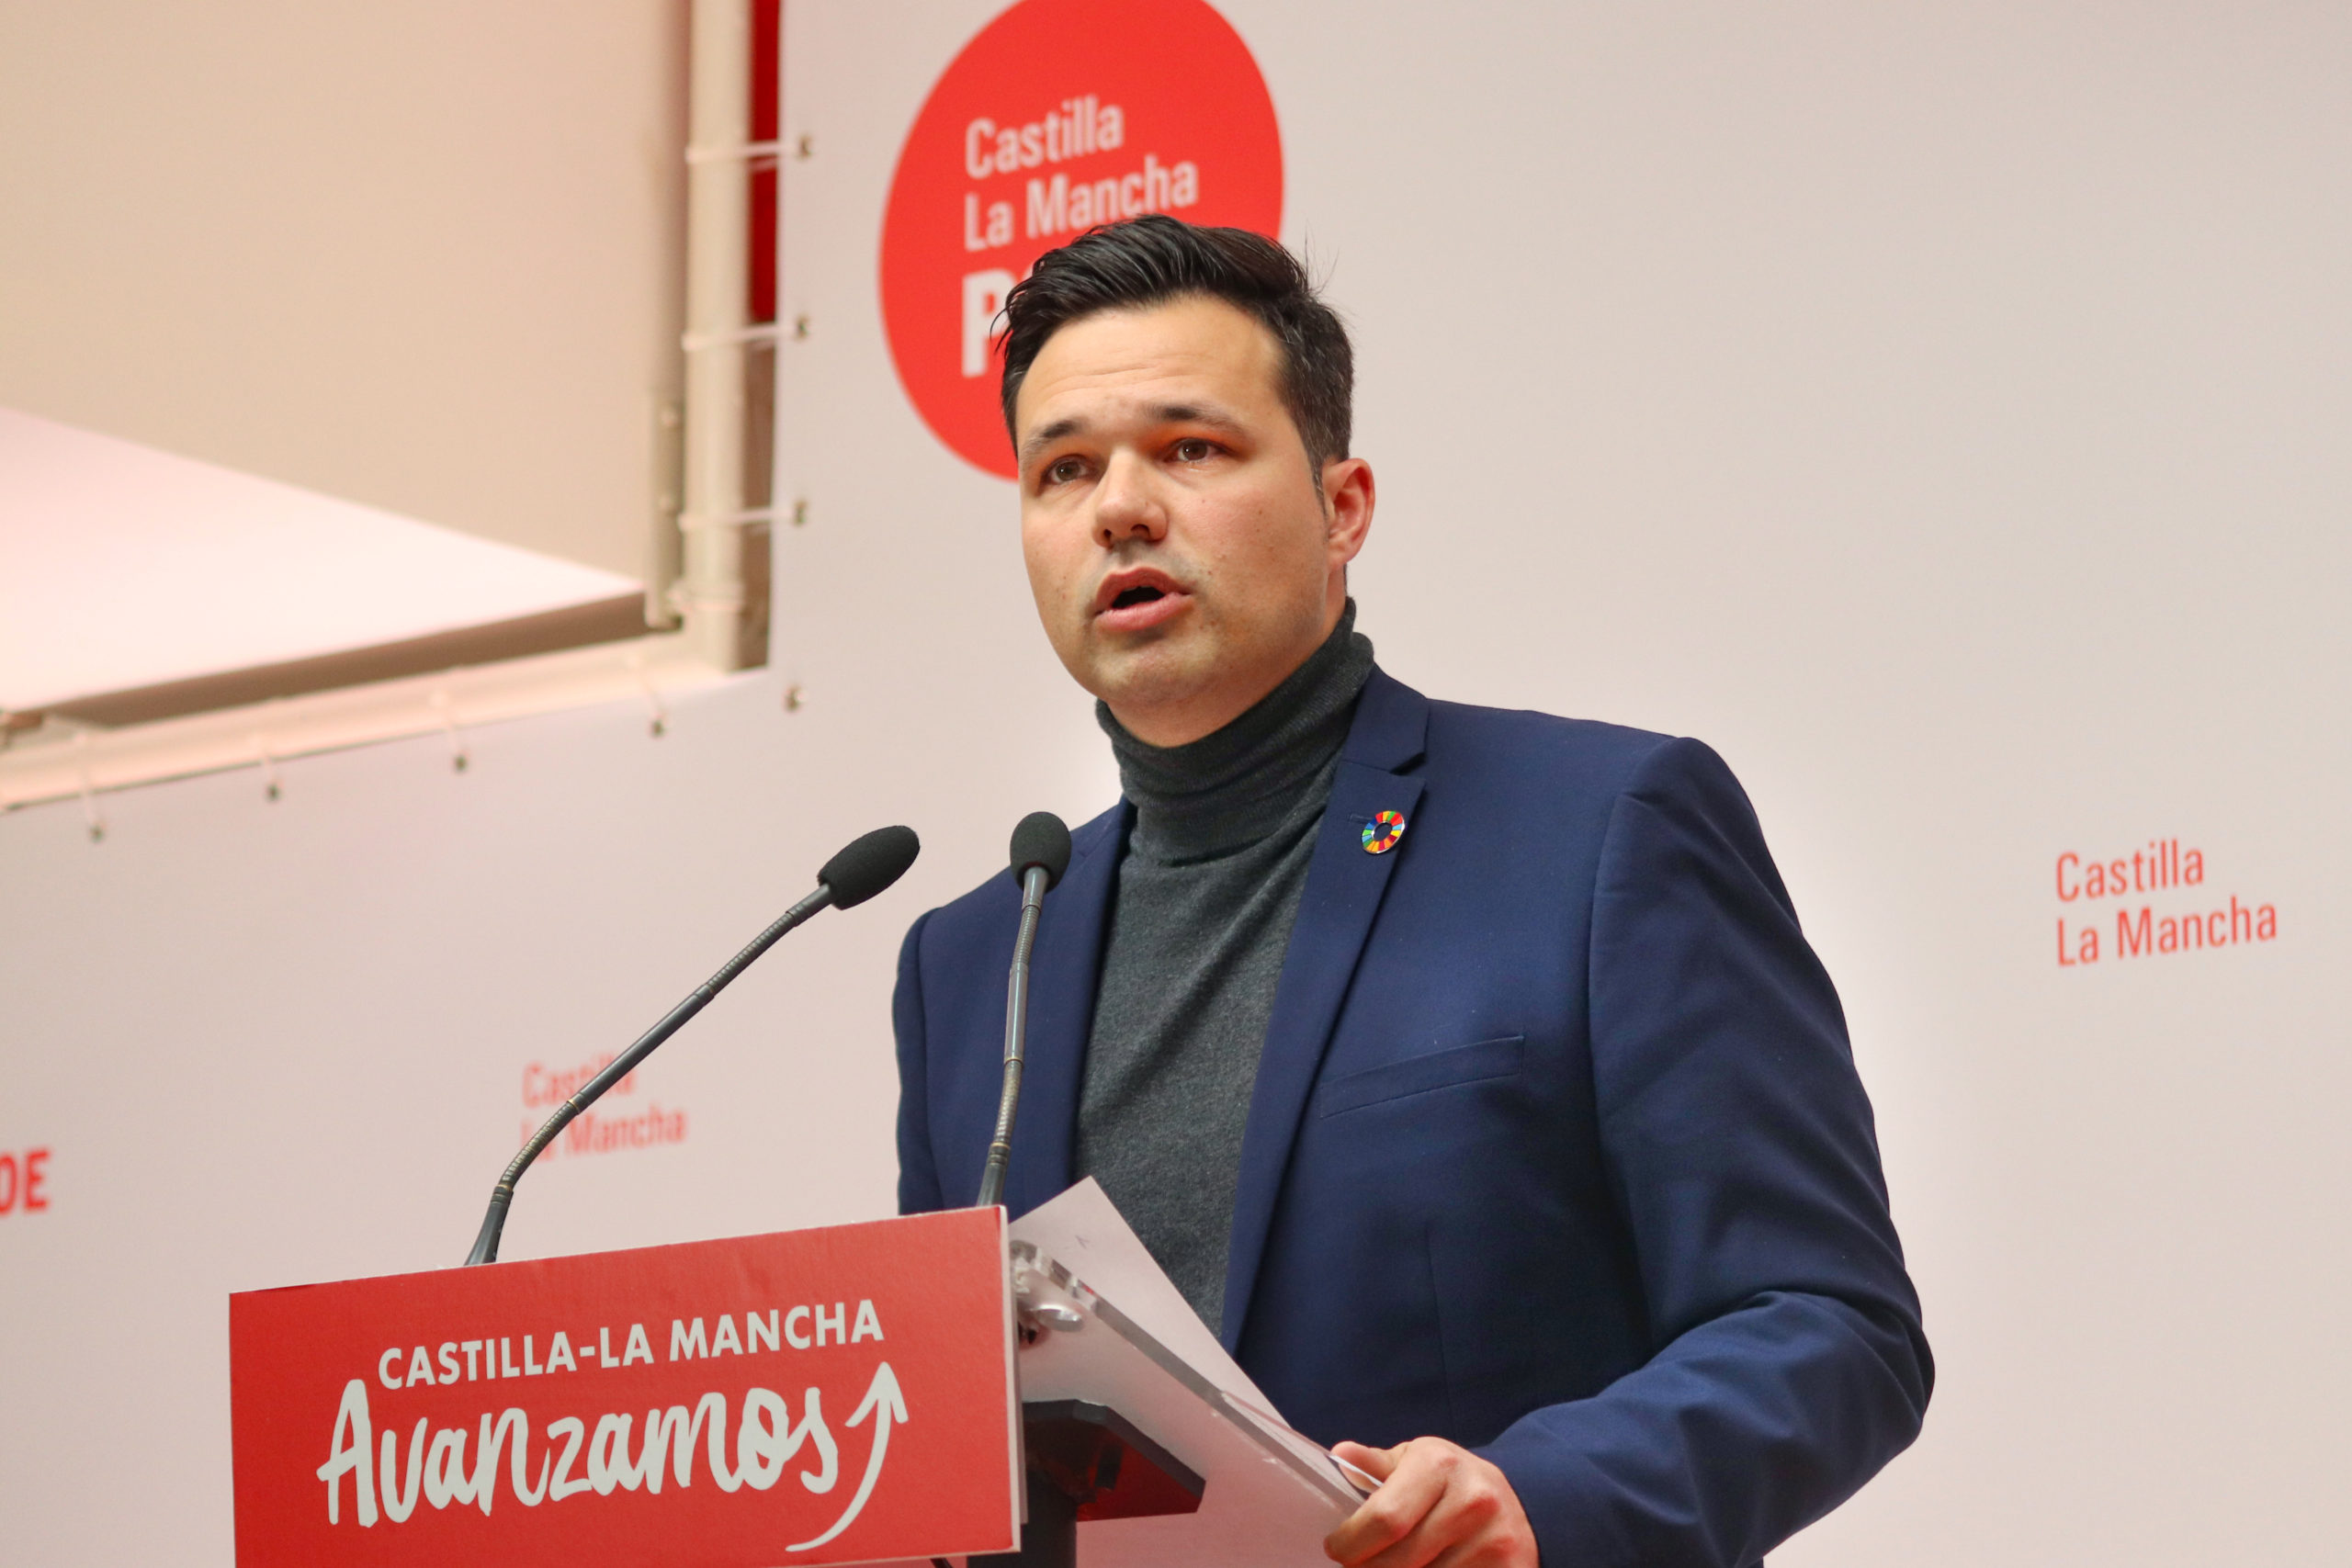 El PSOE de CLM destaca la labor de la sanidad pública y sus profesionales, y pide unidad política